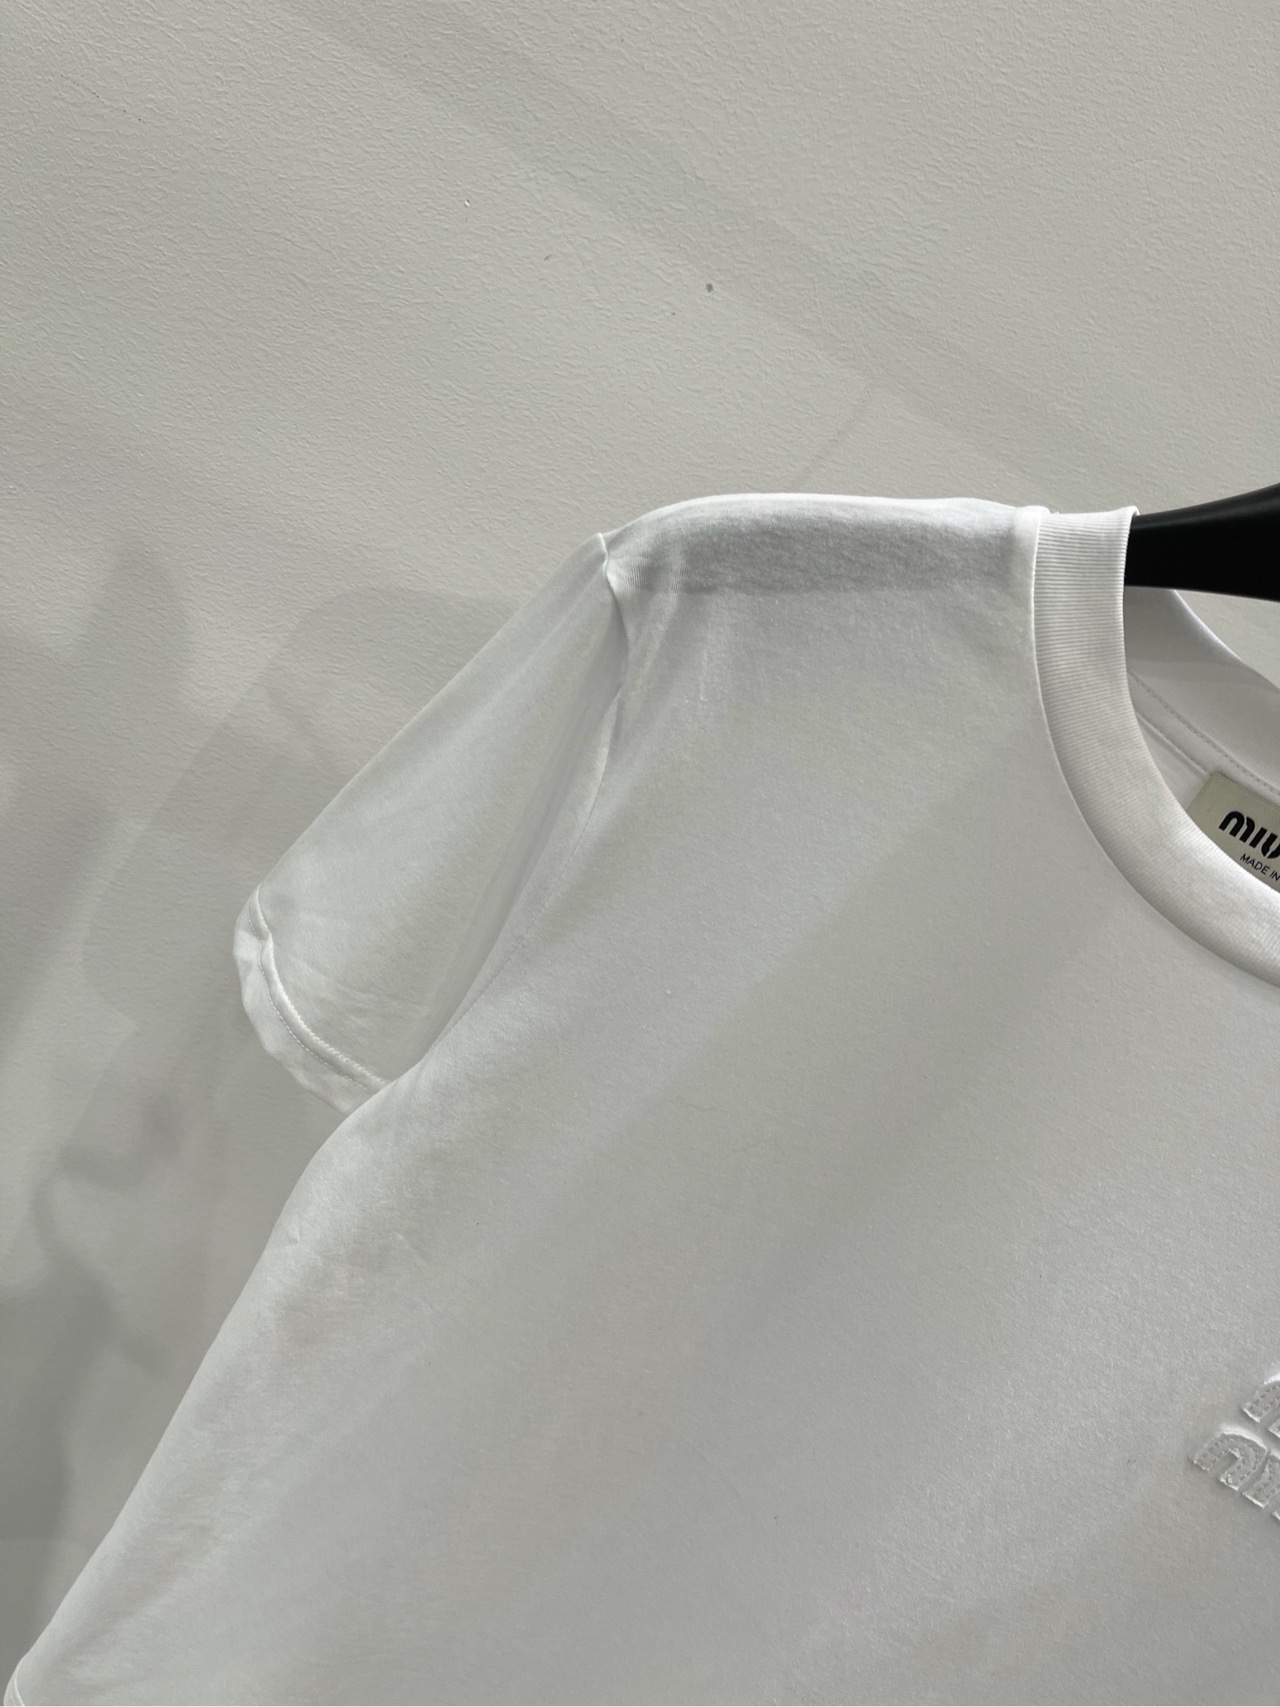 ミュウミュウチョーカーコピー Tシャツ トップス 柔らかい シンプル ゆったり 短袖 爆買い大得価 ホワイト_5